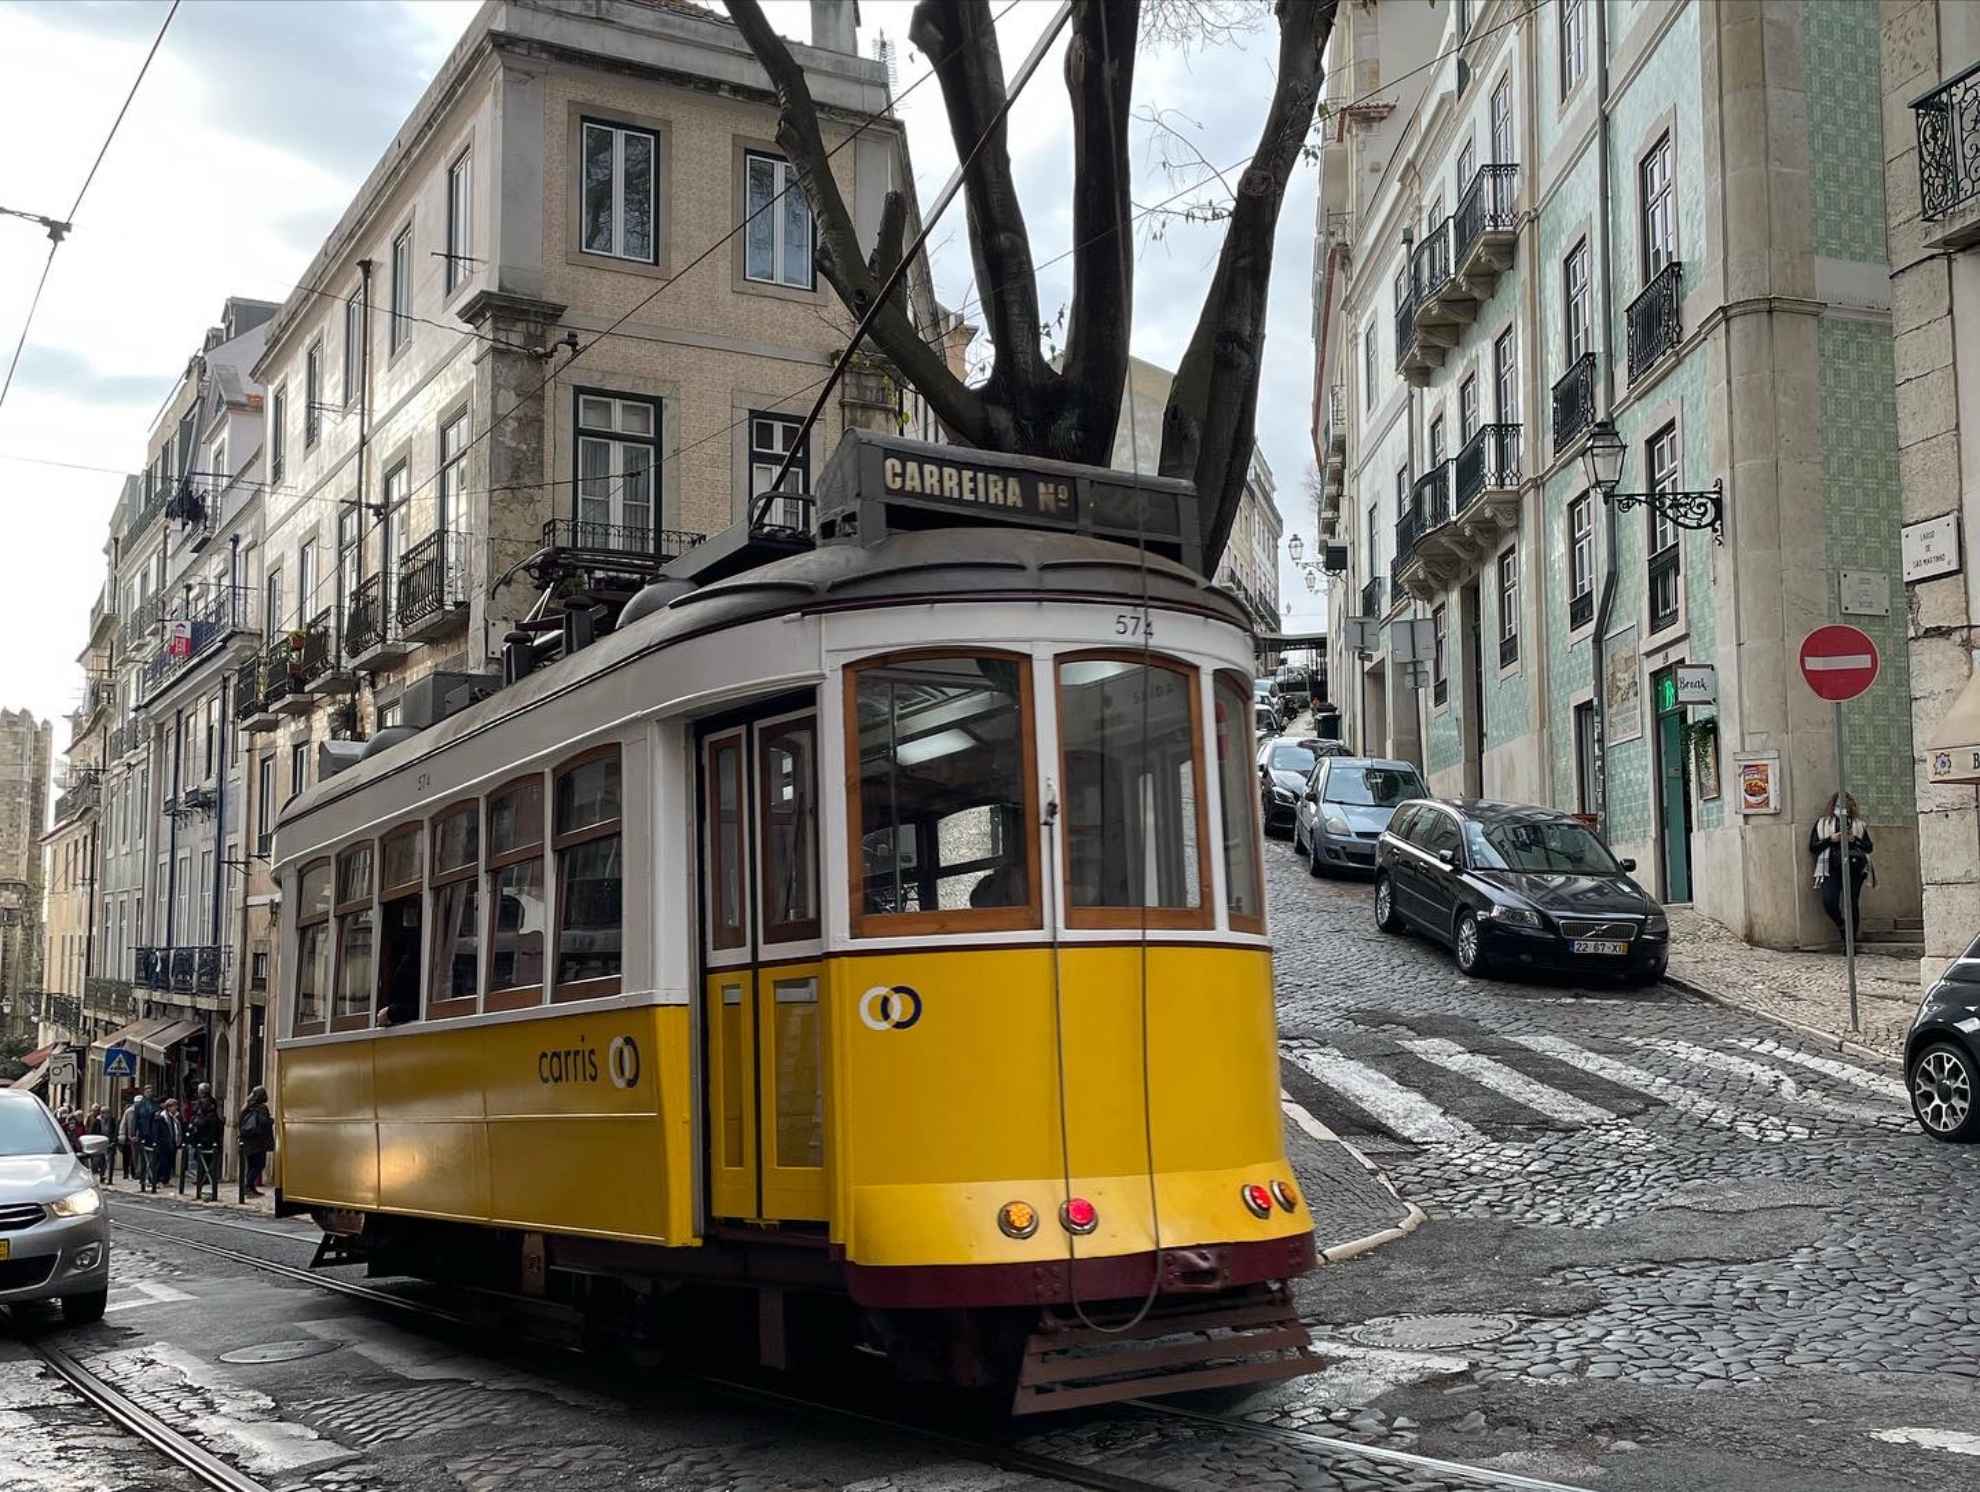 O elétrico é um meio de transporte em Lisboa